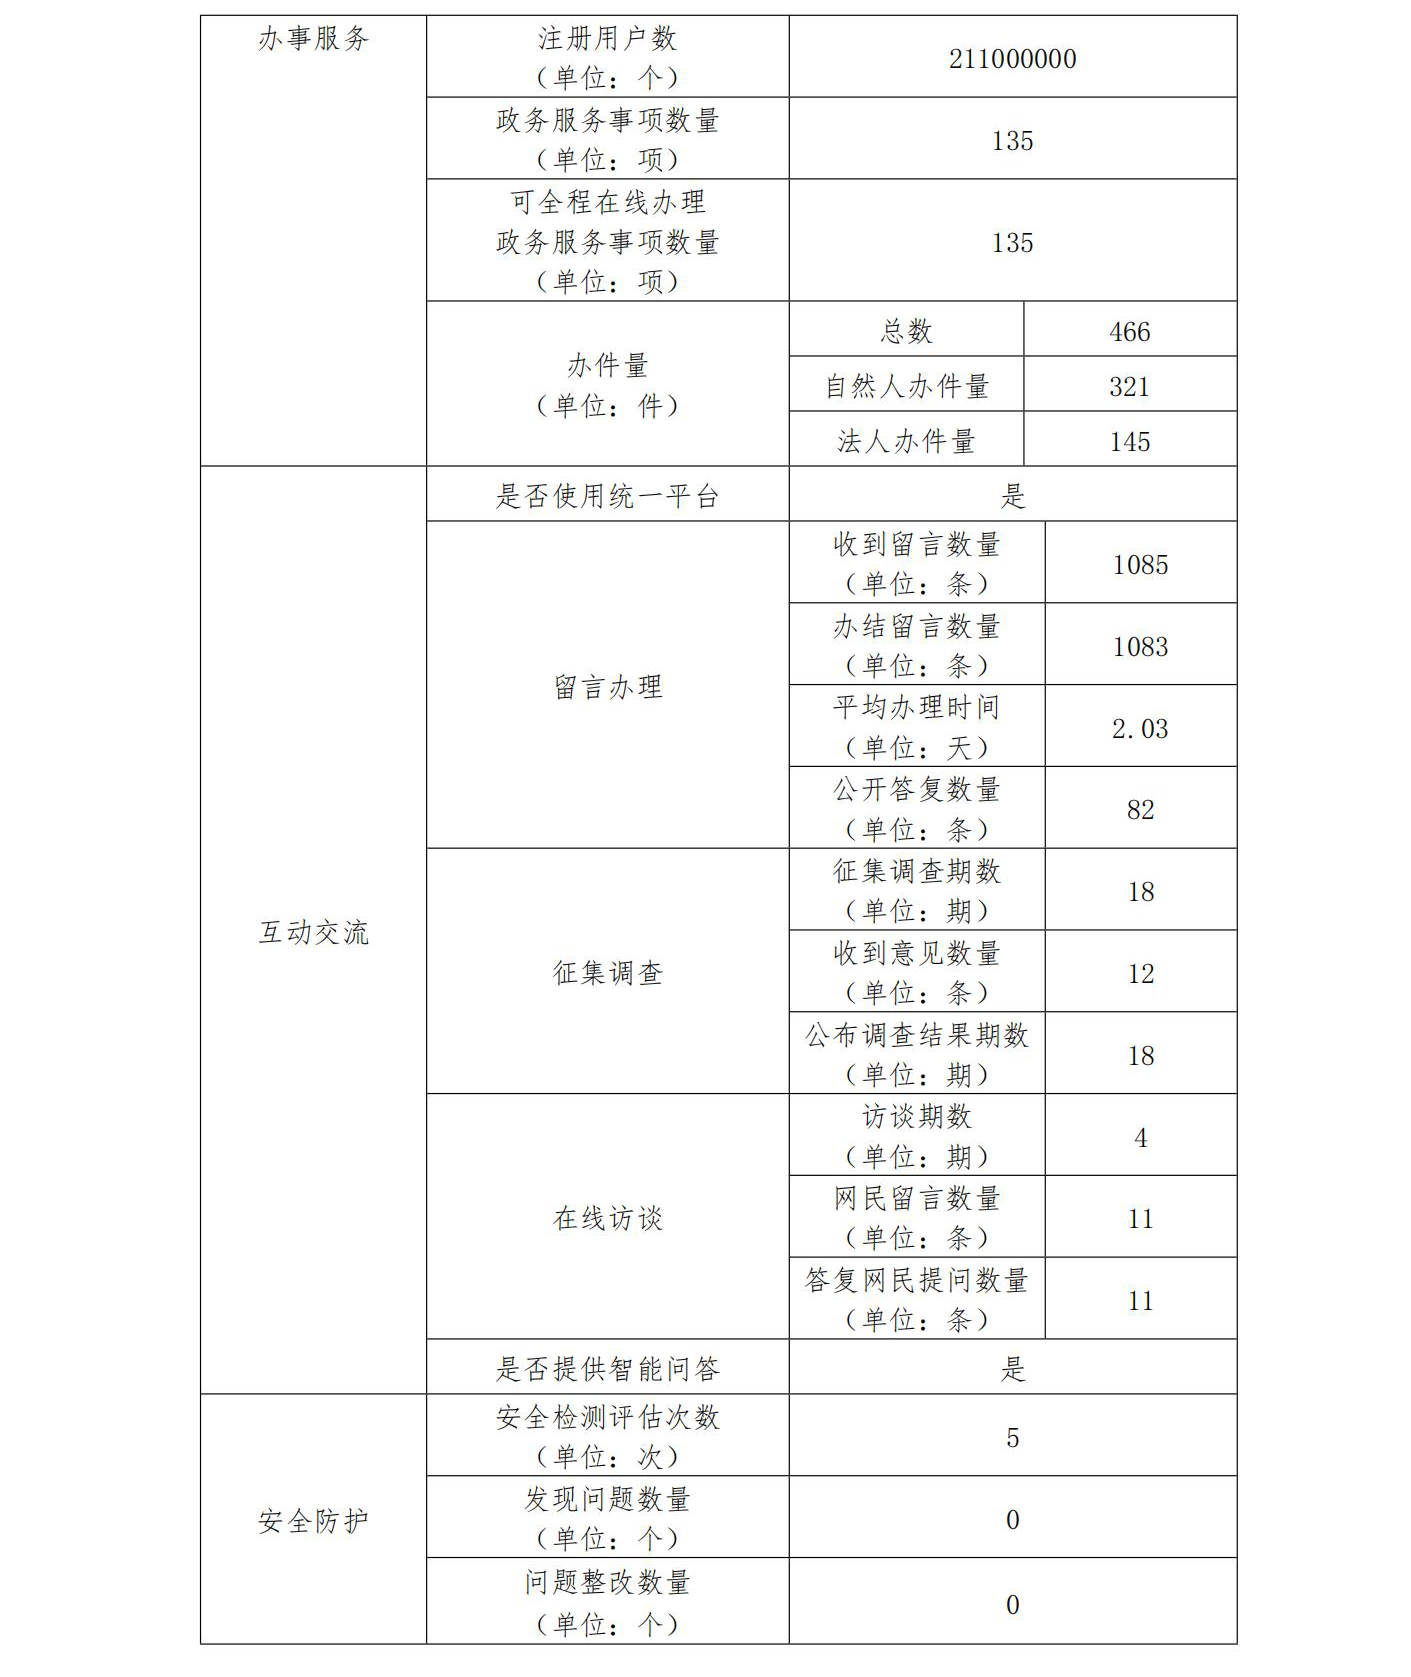 广东省交通运输厅2022政府网站工作年度报表 (1)_01.jpg